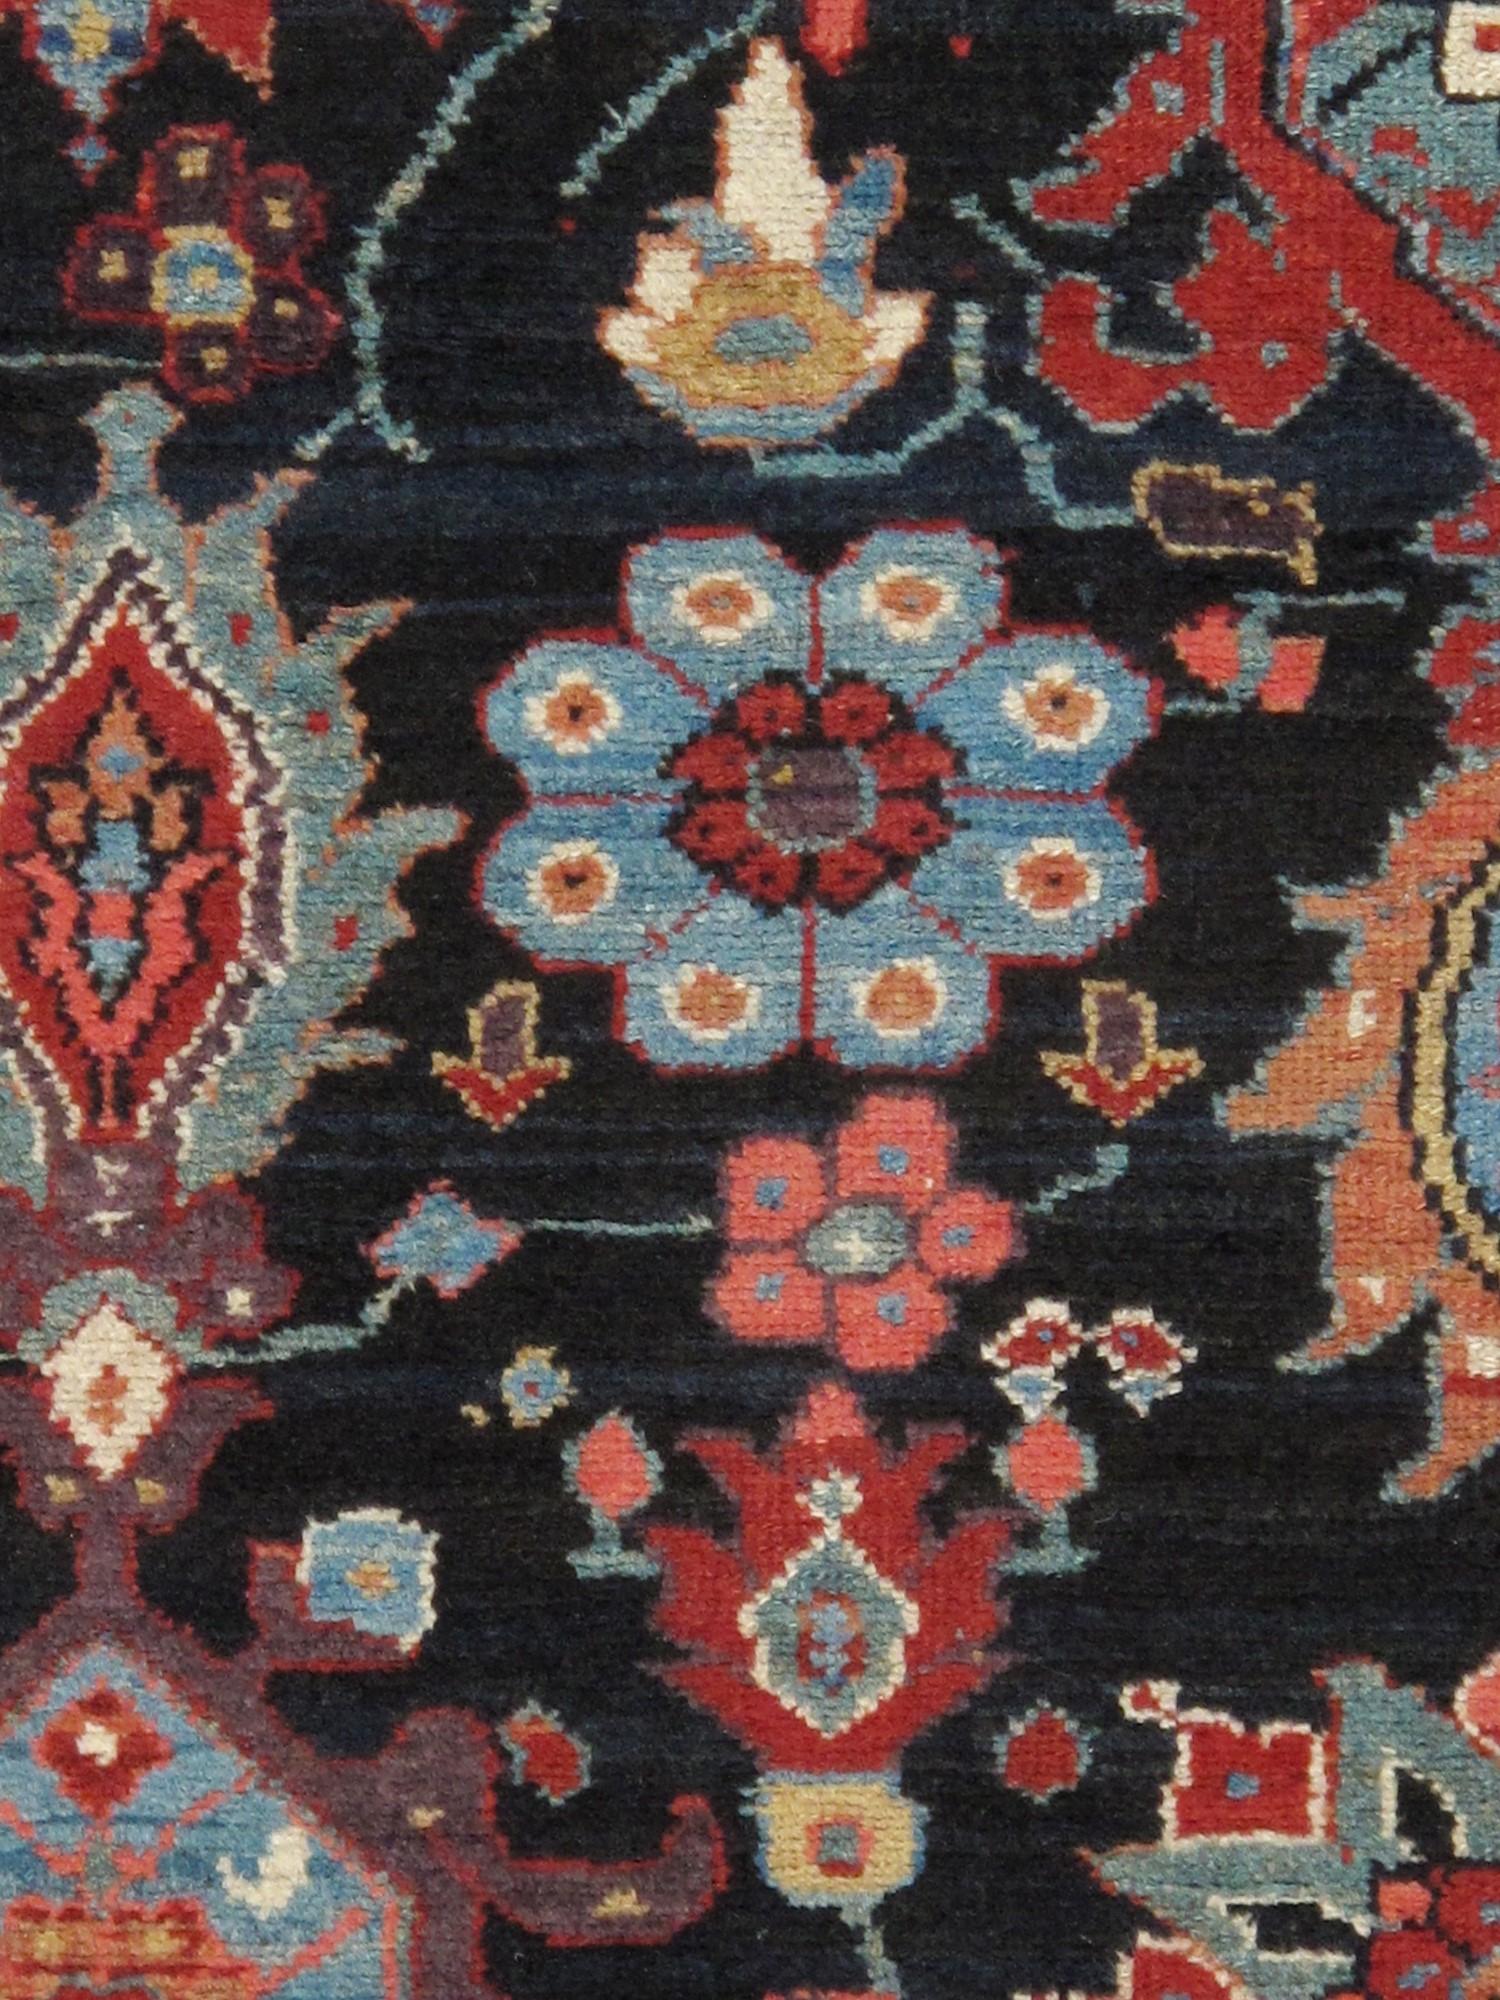 Antique Melody Collection'S. Die handgefertigte, handgeknüpfte Konstruktion dieses Teppichs sorgt für Langlebigkeit, so dass er viele Jahre halten wird. Jeder Teppich ist handgefertigt aus 100% hochwertiger Lammwolle. Mit seinem zeitlosen Stil ist